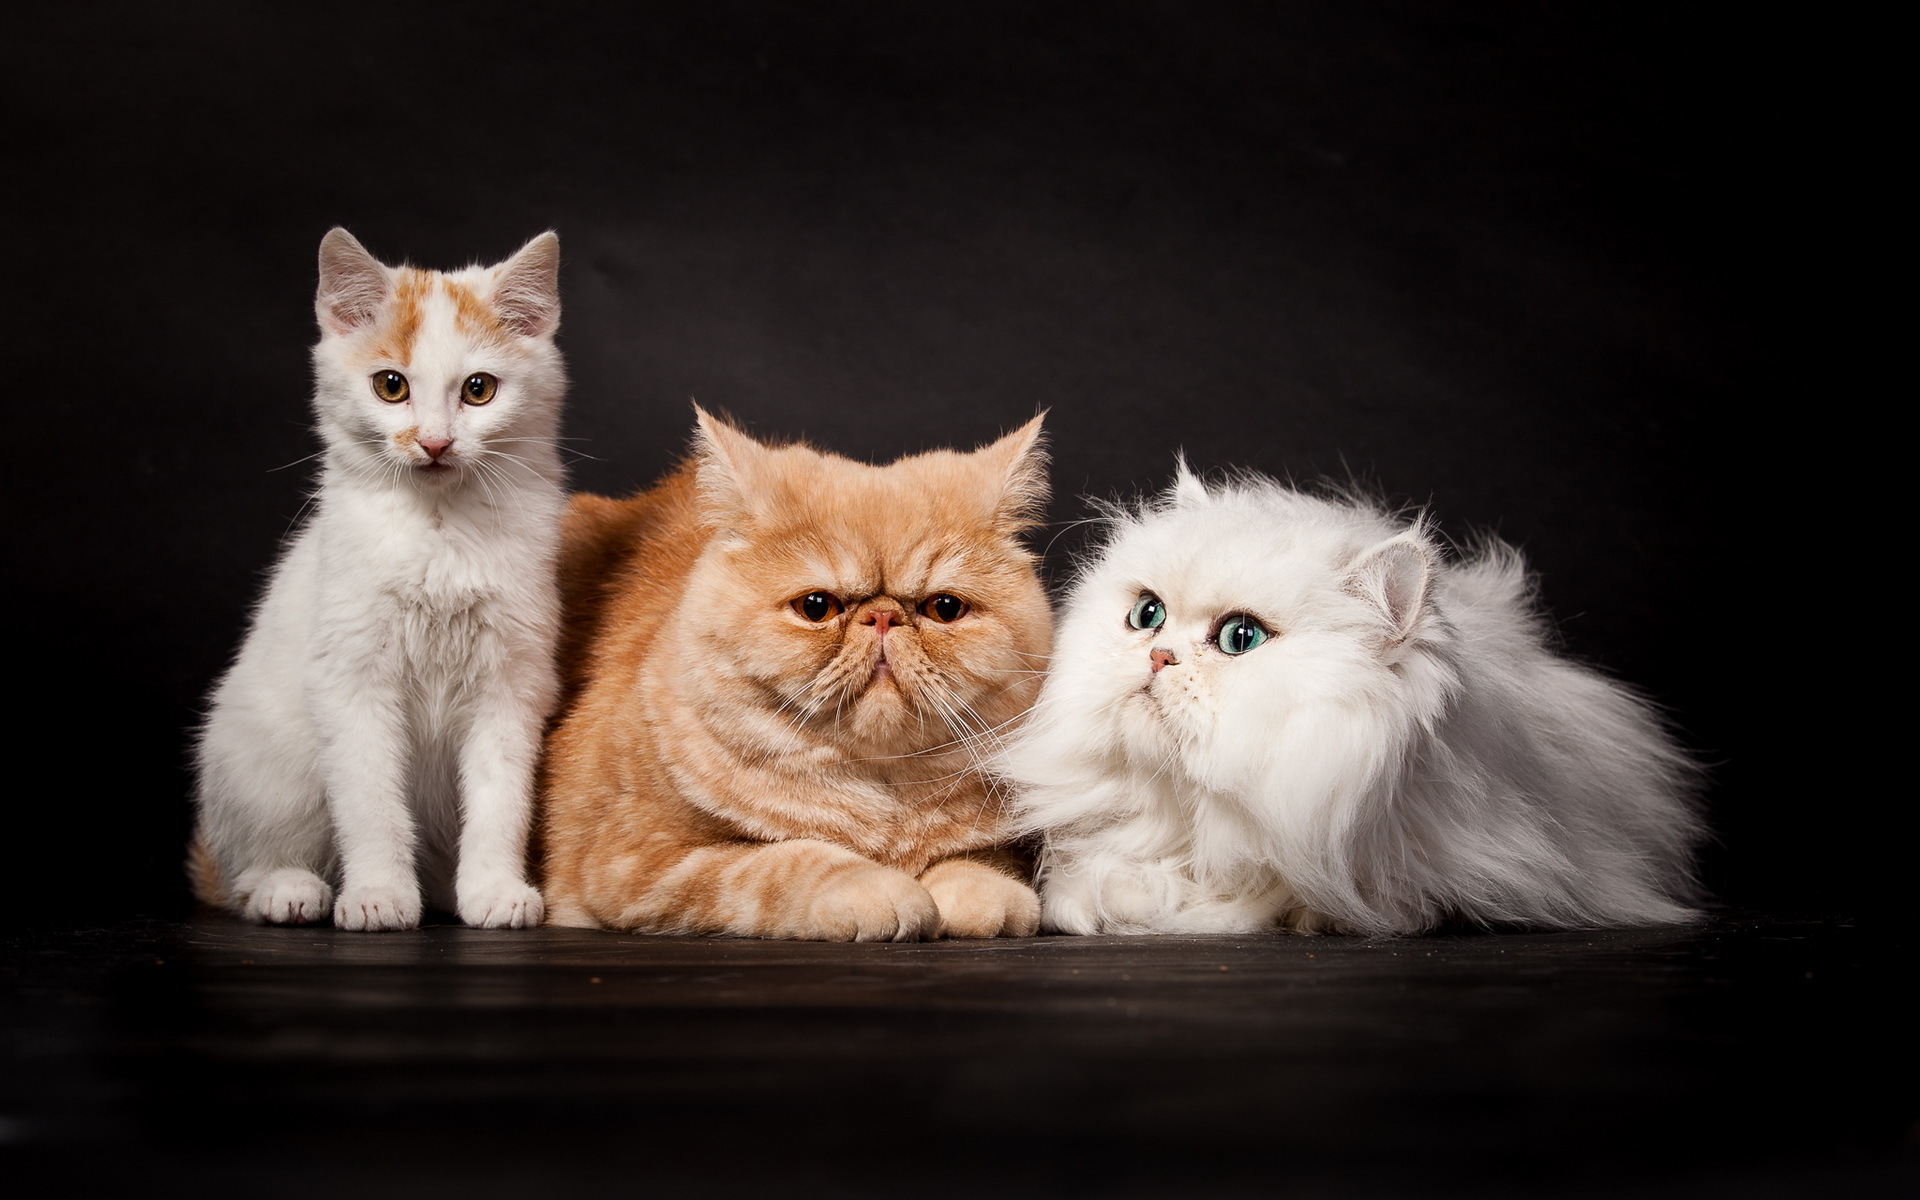 Картинка котят Кошки втроем Животные Котята котенок котенка кот коты кошка три Трое 3 животное